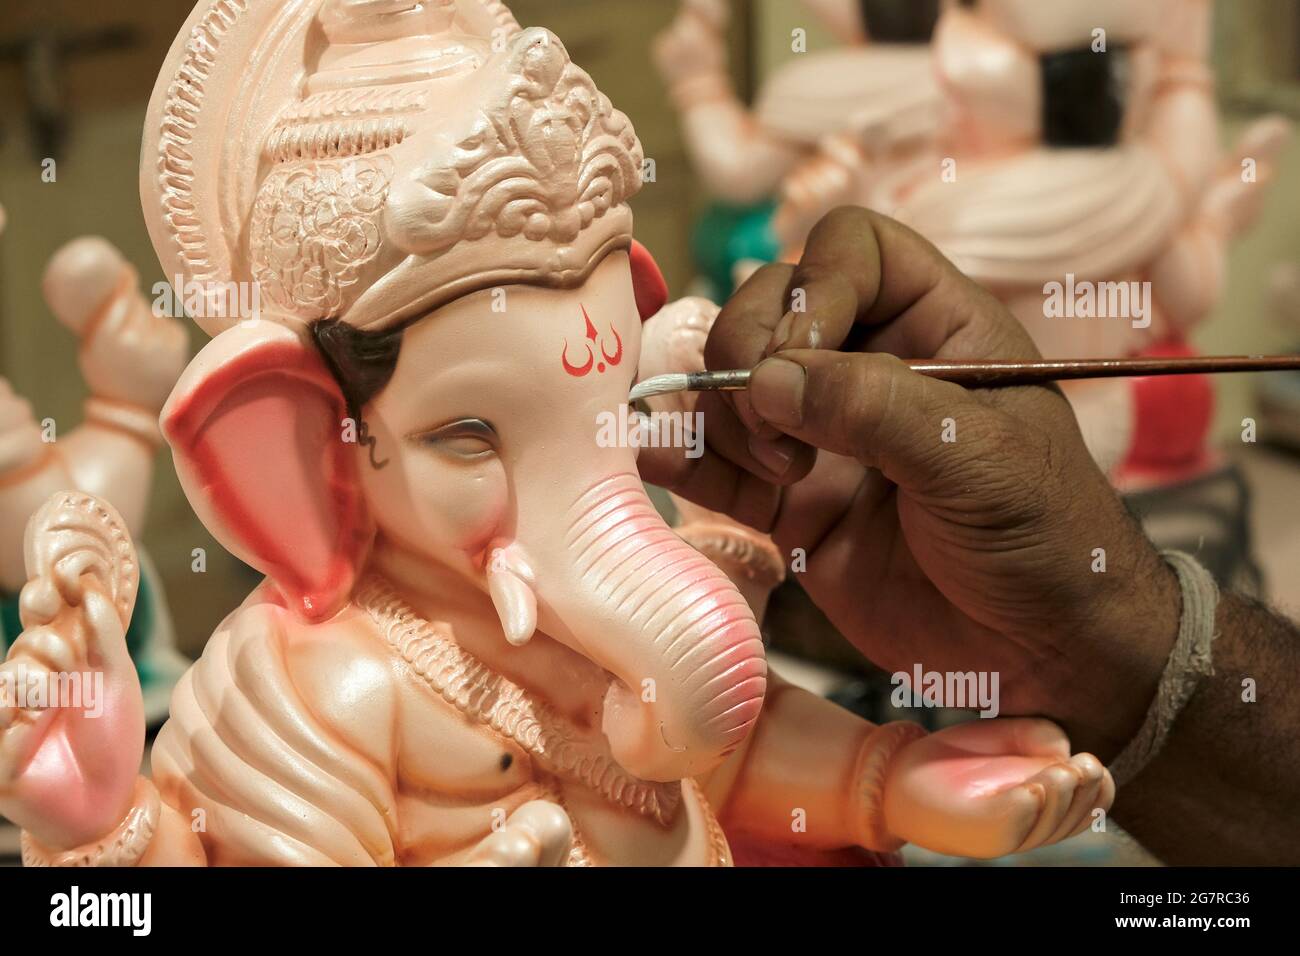 Pittura artistica e ritocchi finali a Lord Ganesha, in vista del festival 'Ganesha Chaturthi' a Pune. Foto Stock